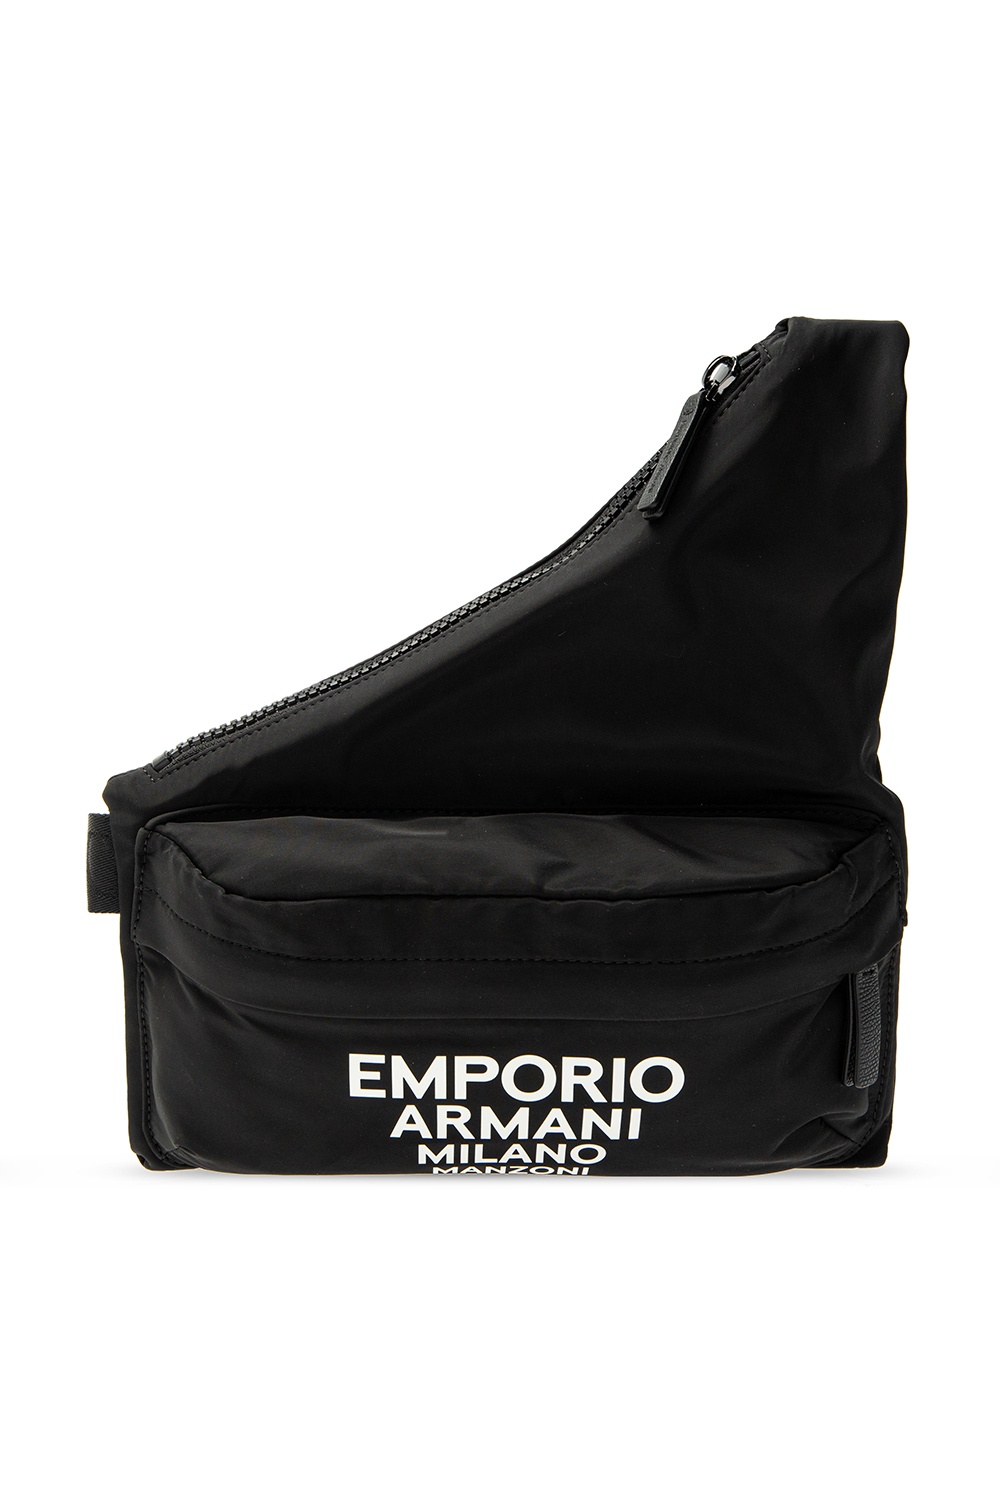 armani shoulder bags